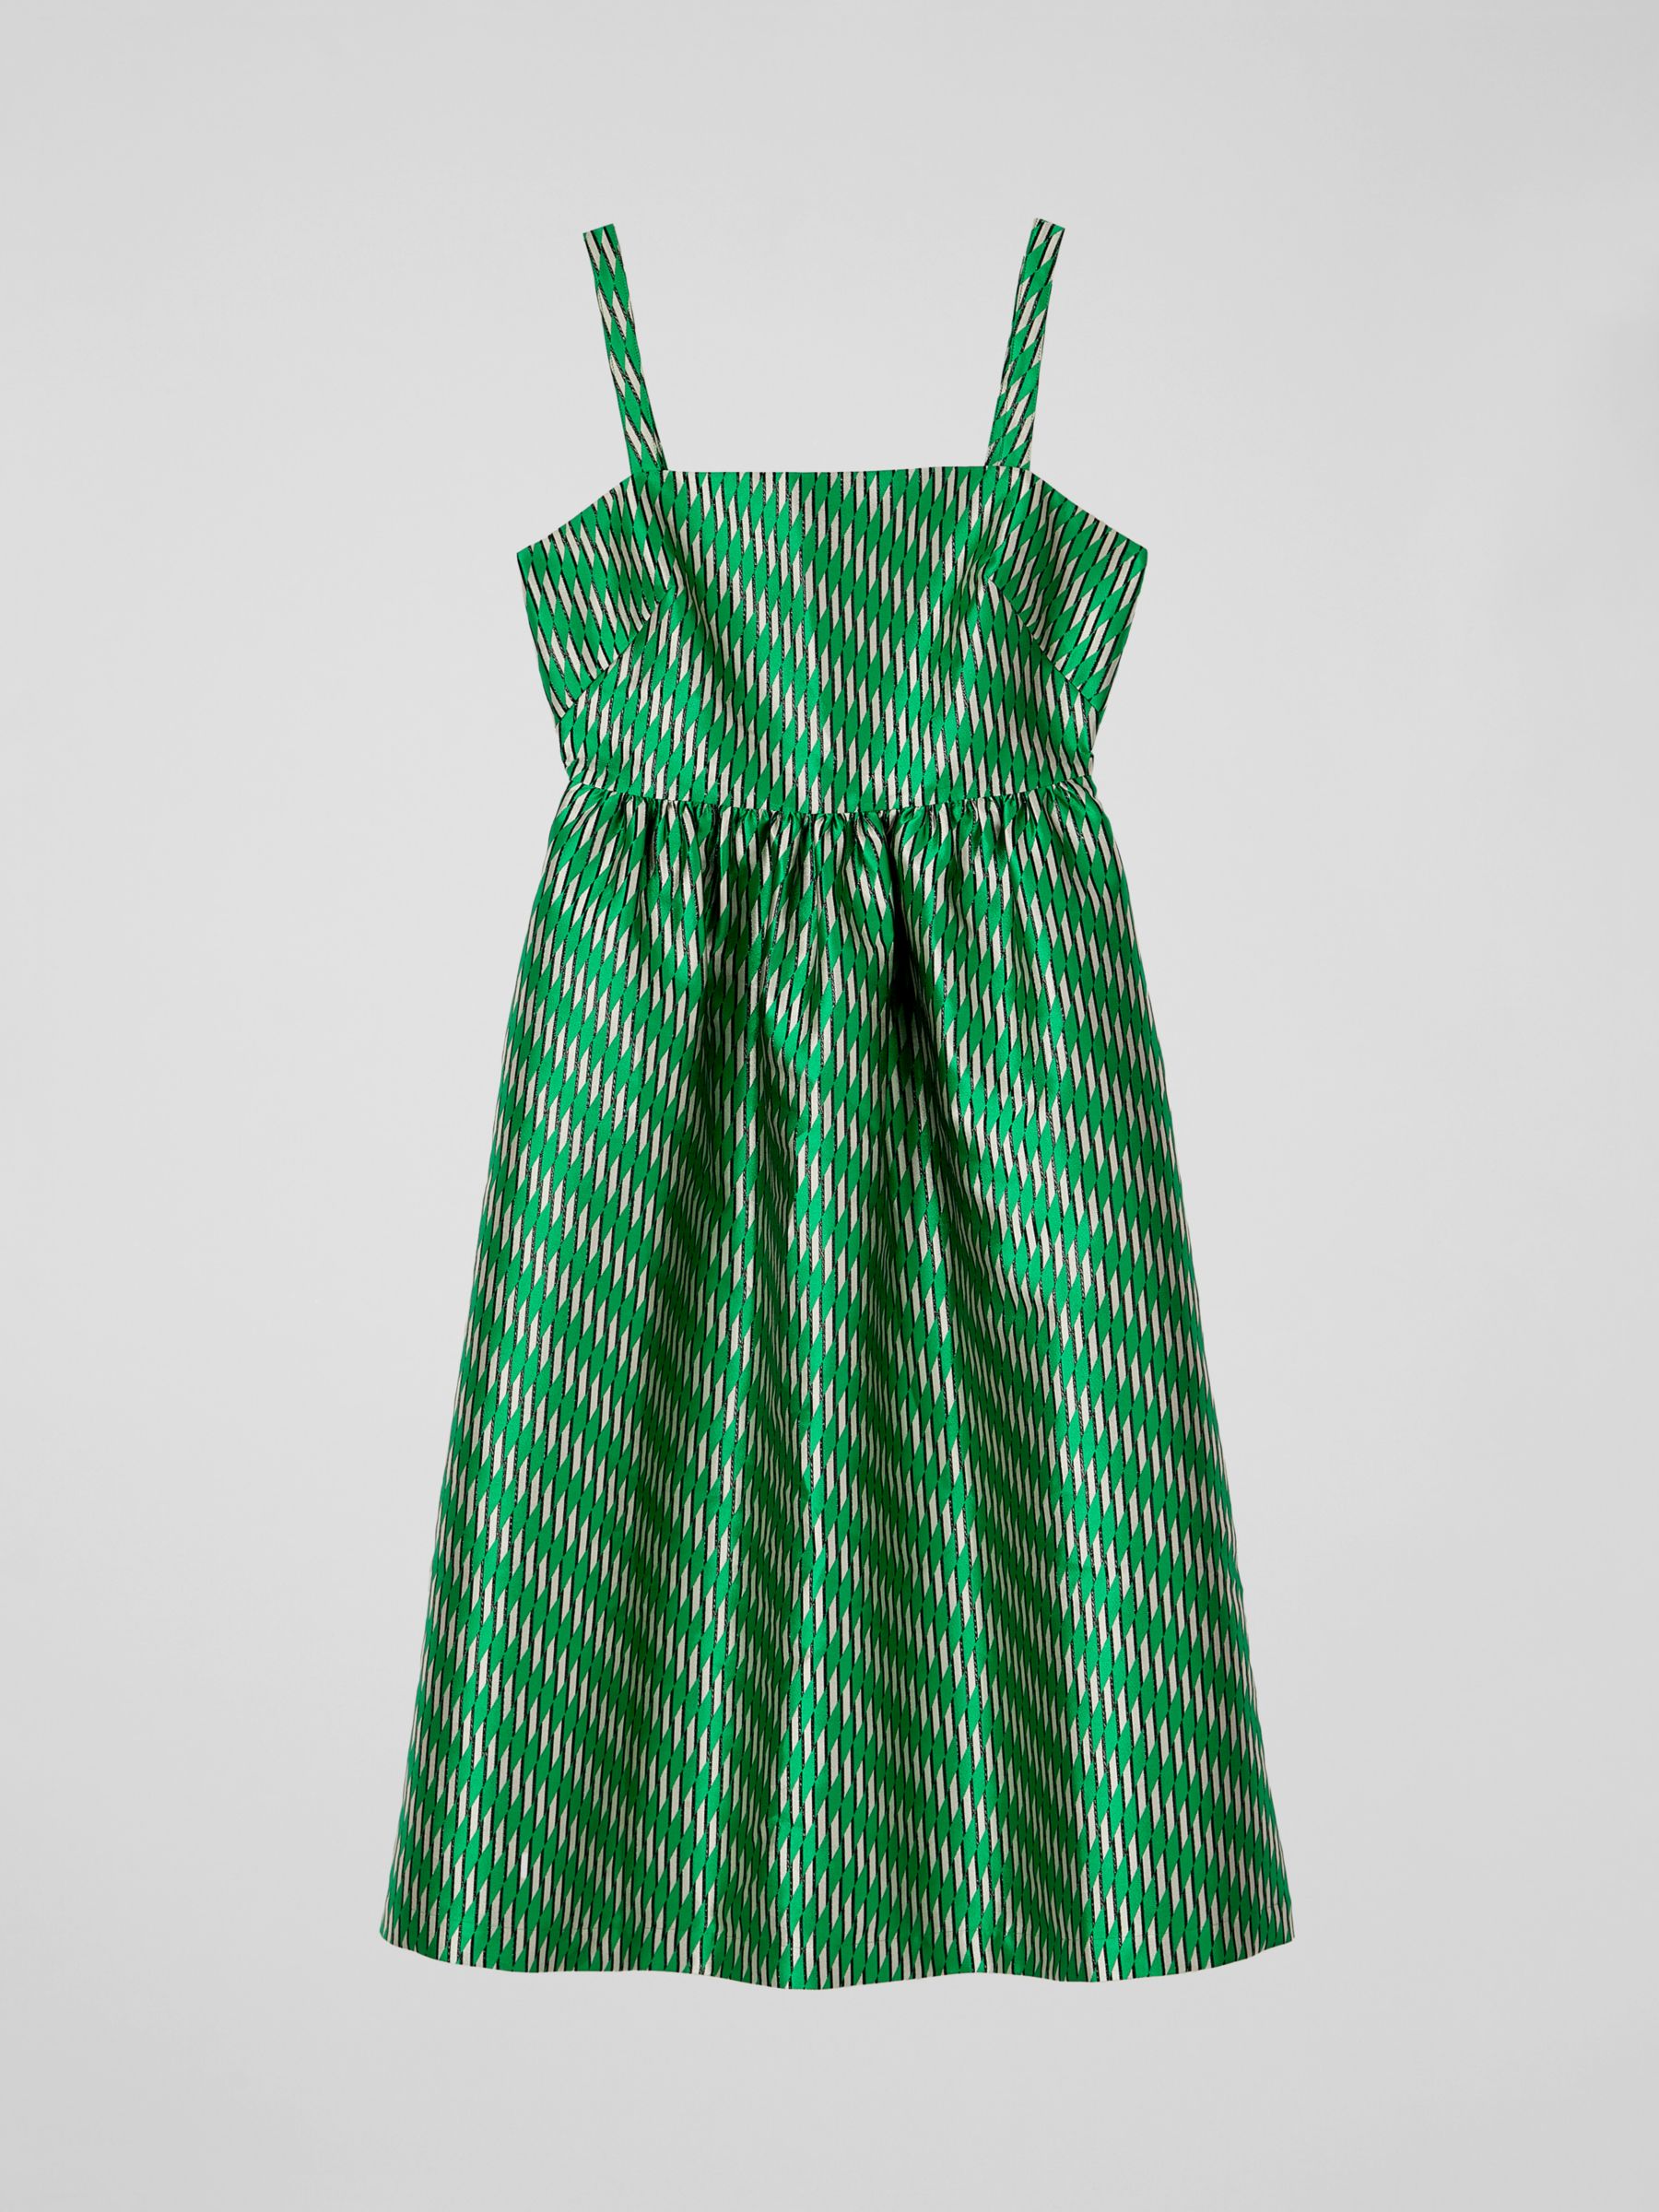 L.K.Bennett Elodie Geometric Midi Dress, Green/Multi, 6